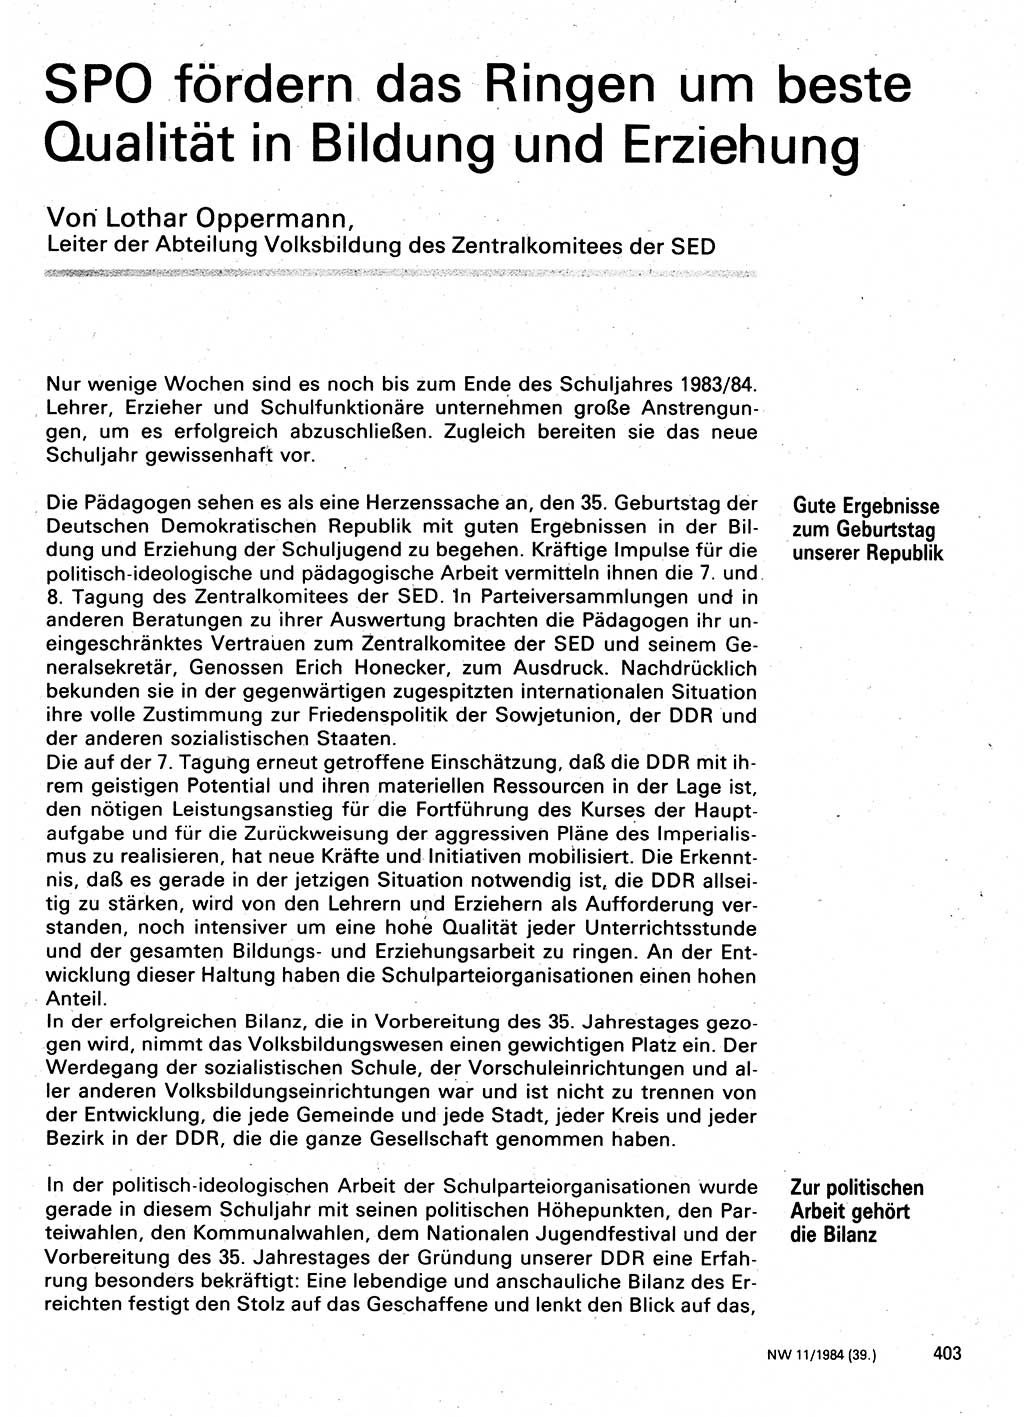 Neuer Weg (NW), Organ des Zentralkomitees (ZK) der SED (Sozialistische Einheitspartei Deutschlands) für Fragen des Parteilebens, 39. Jahrgang [Deutsche Demokratische Republik (DDR)] 1984, Seite 403 (NW ZK SED DDR 1984, S. 403)